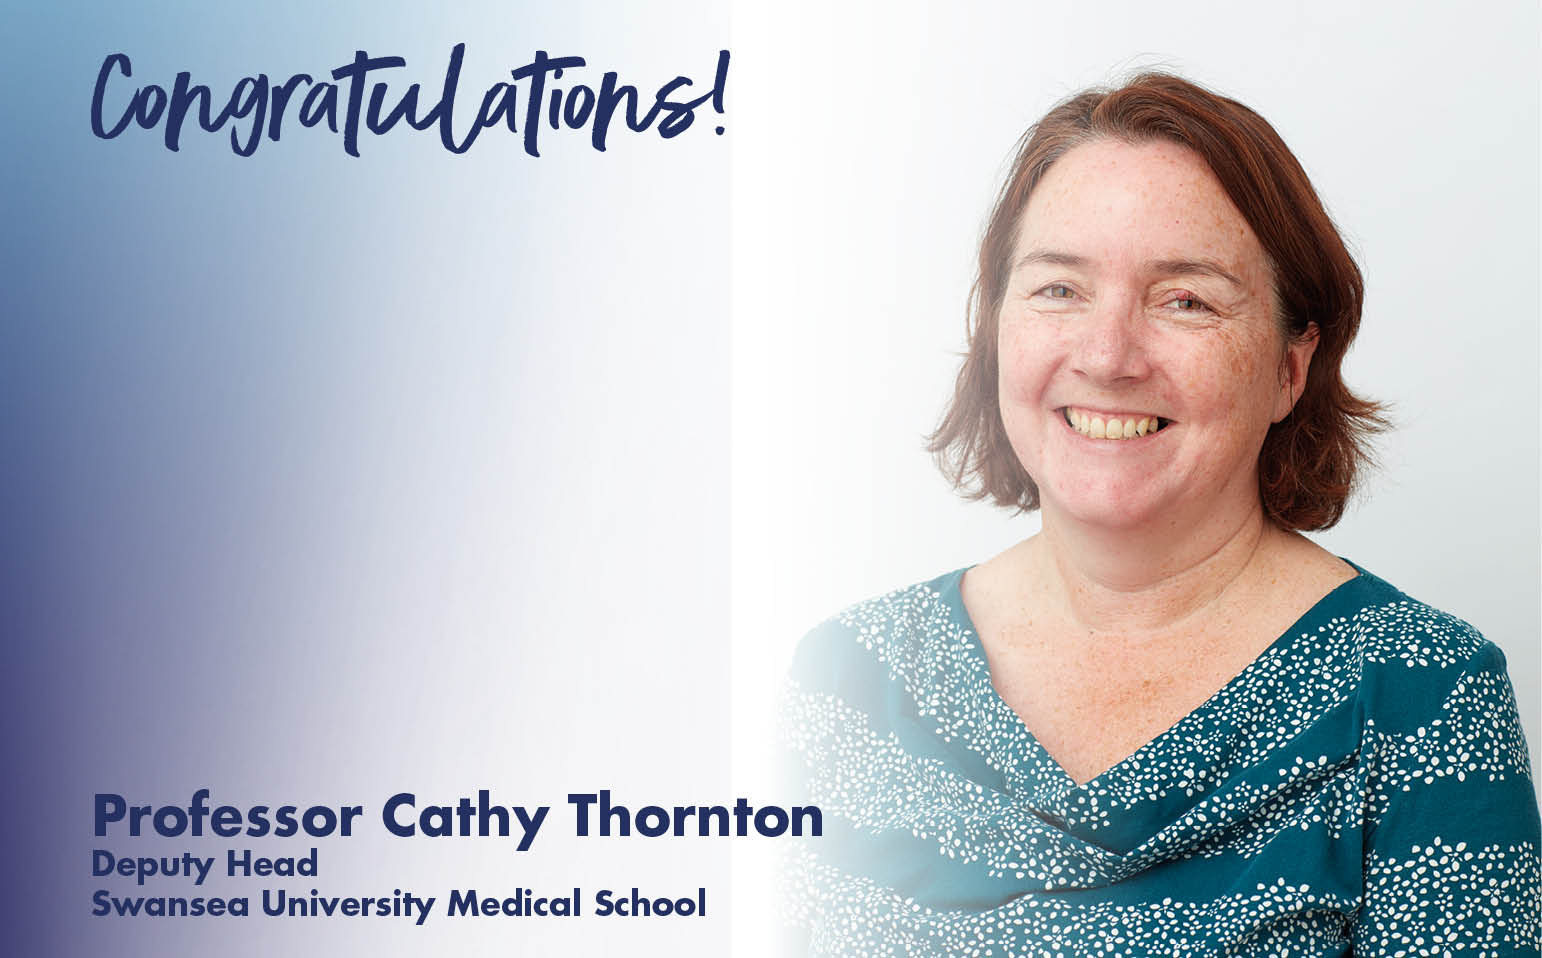 Dr Cathy Thornton